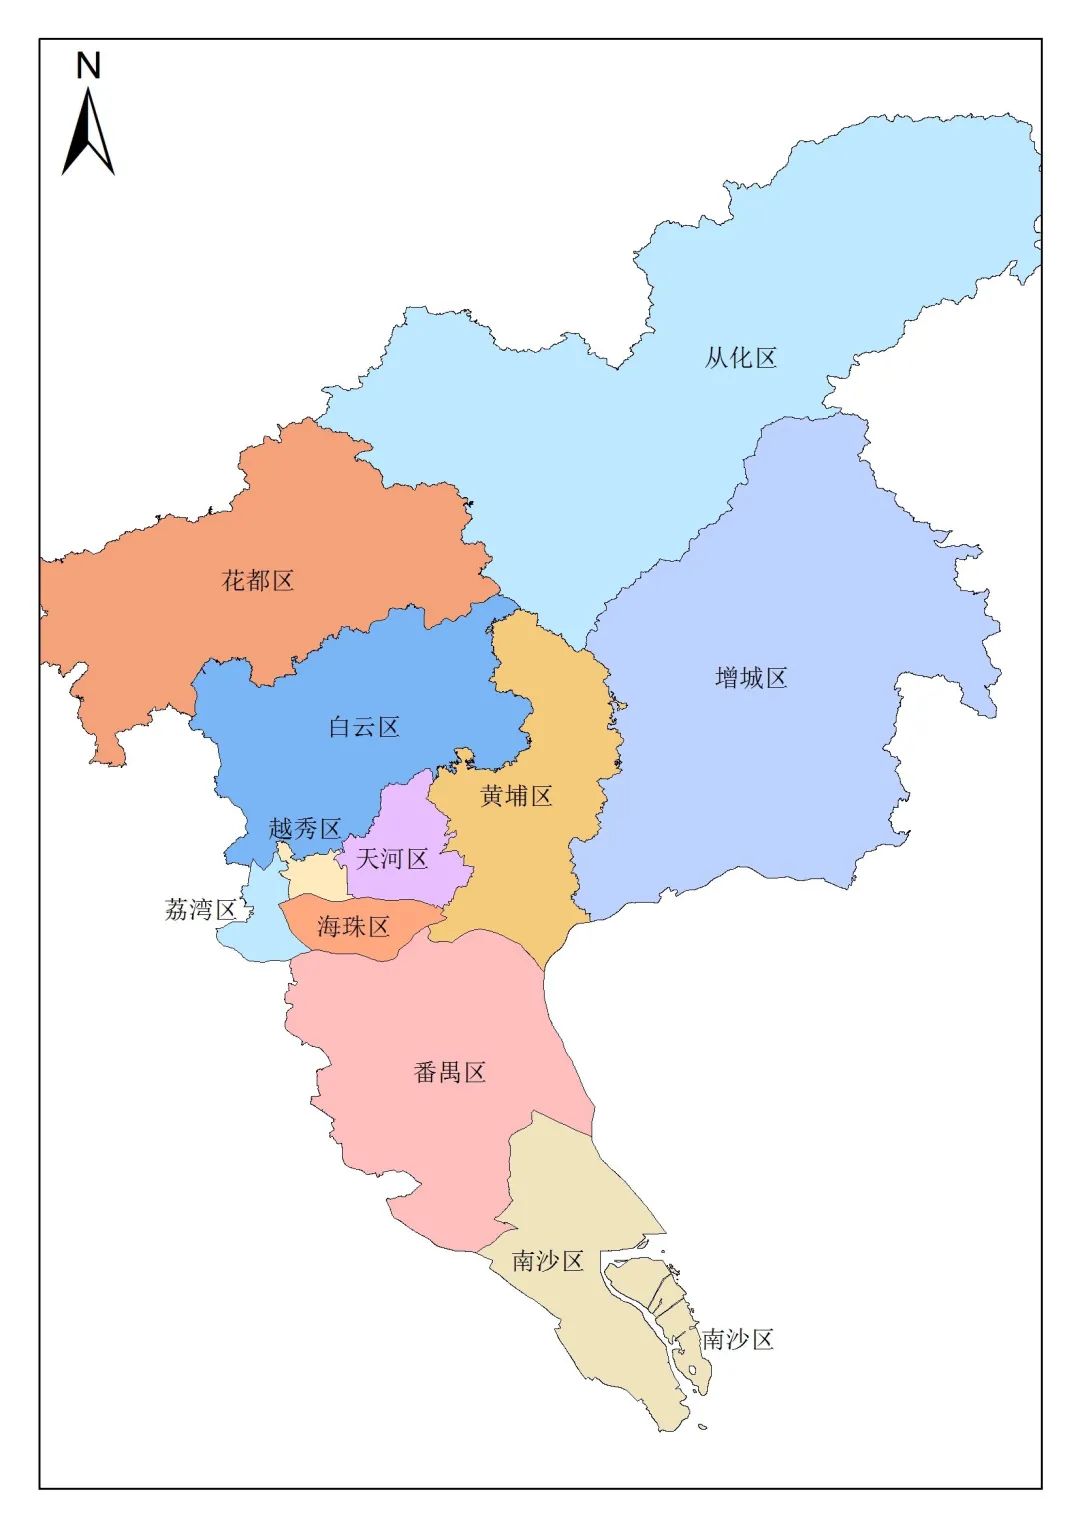 广州如今11区,有4个区,是从县级市摇身变区